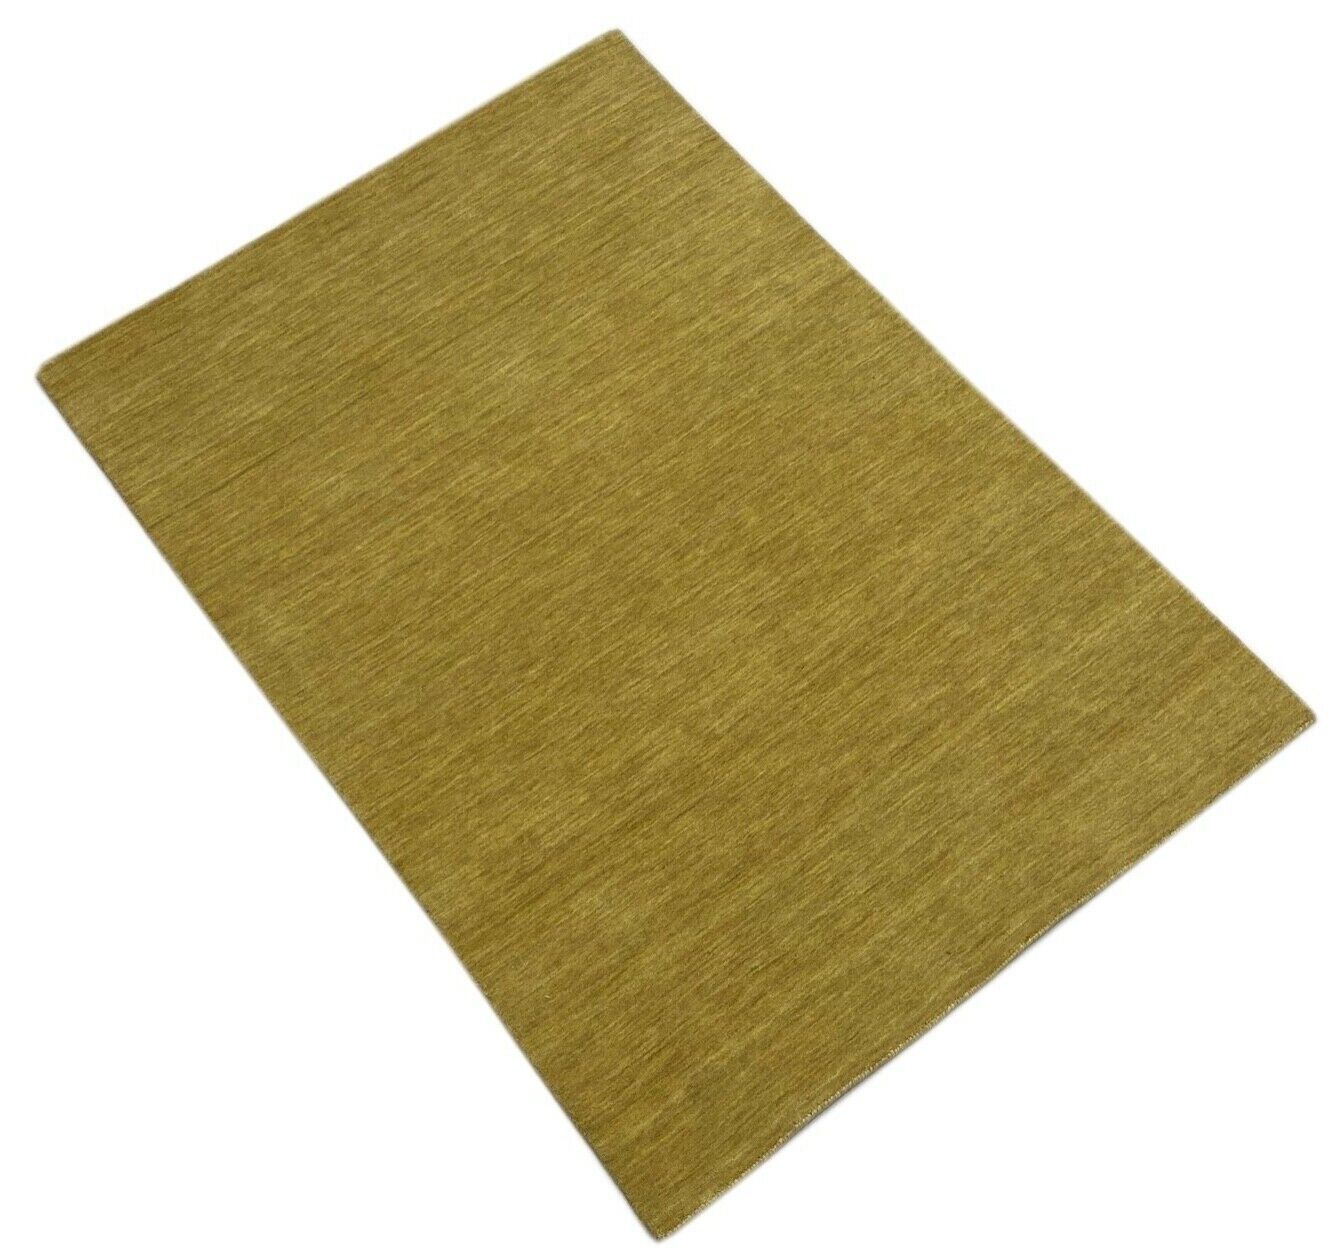 Gabbeh Teppich Dunkel Beige Gold 100% Wolle 170x240 cm Handgewebt Lori WR102